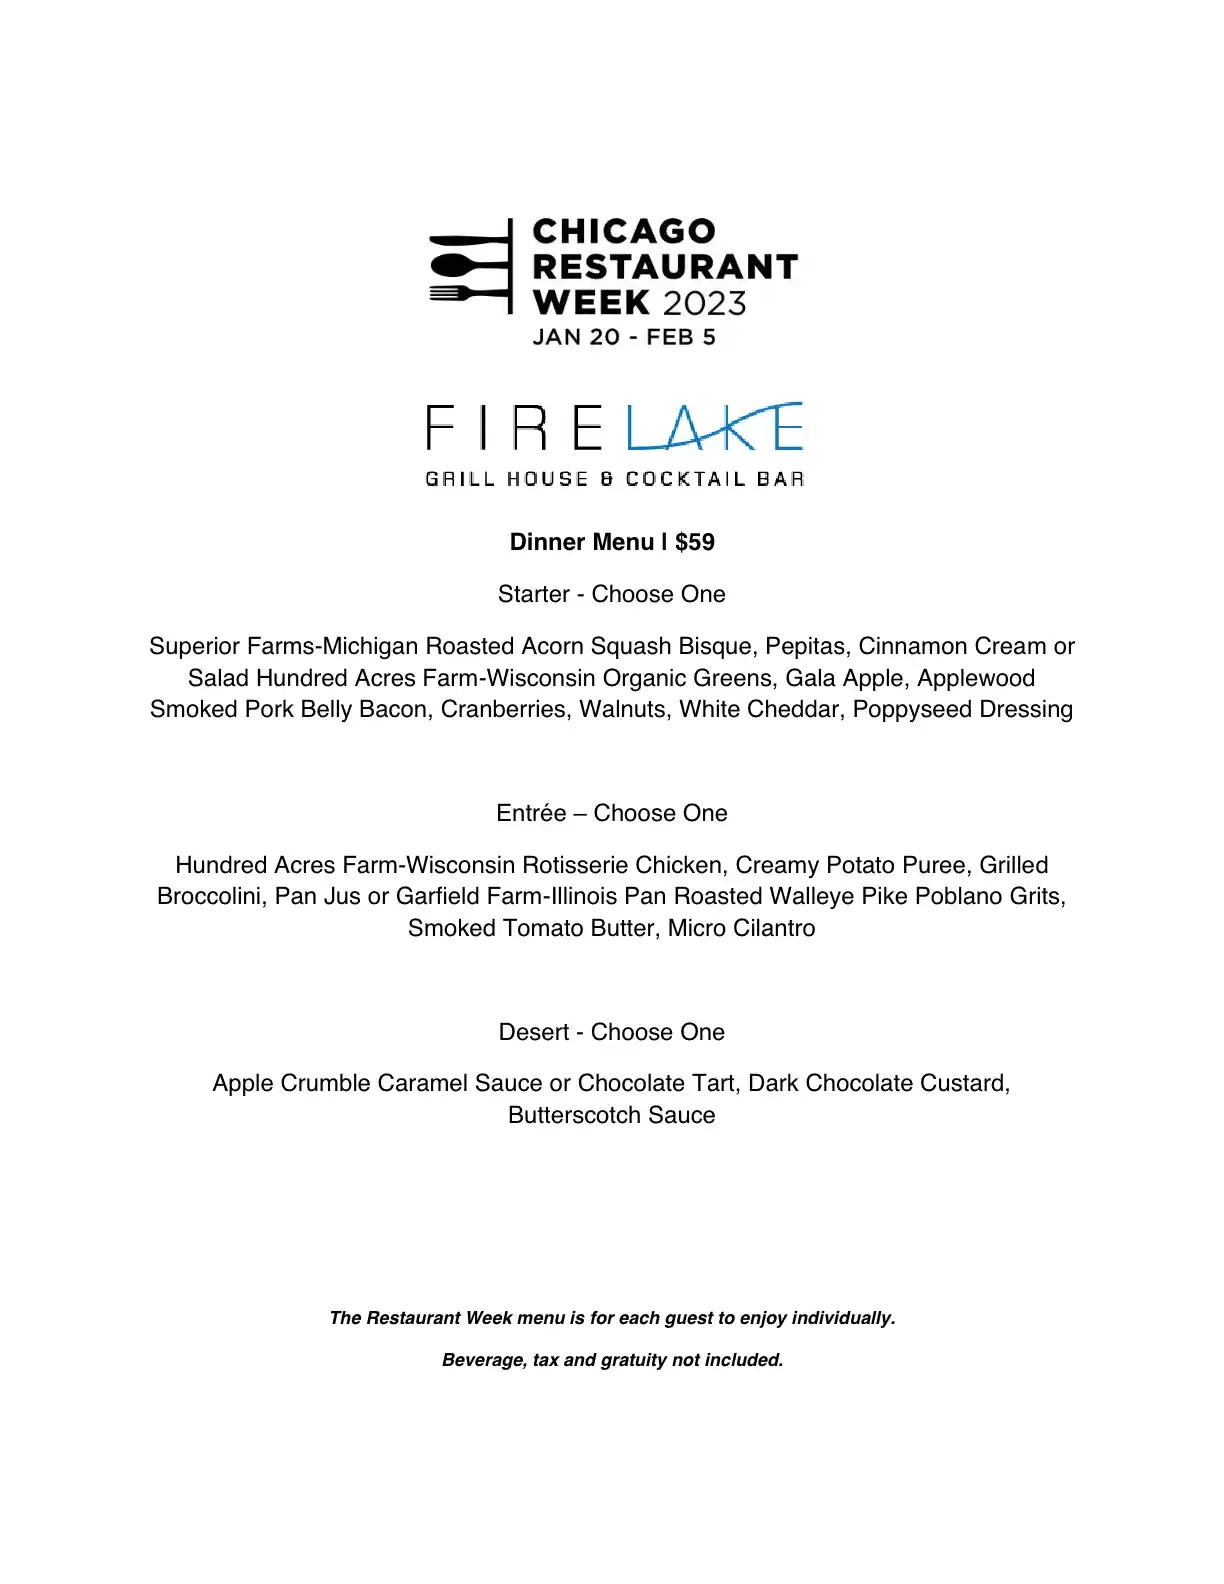 Chicago Restaurant Week 2023 Menu Firelake Grill House Dinner